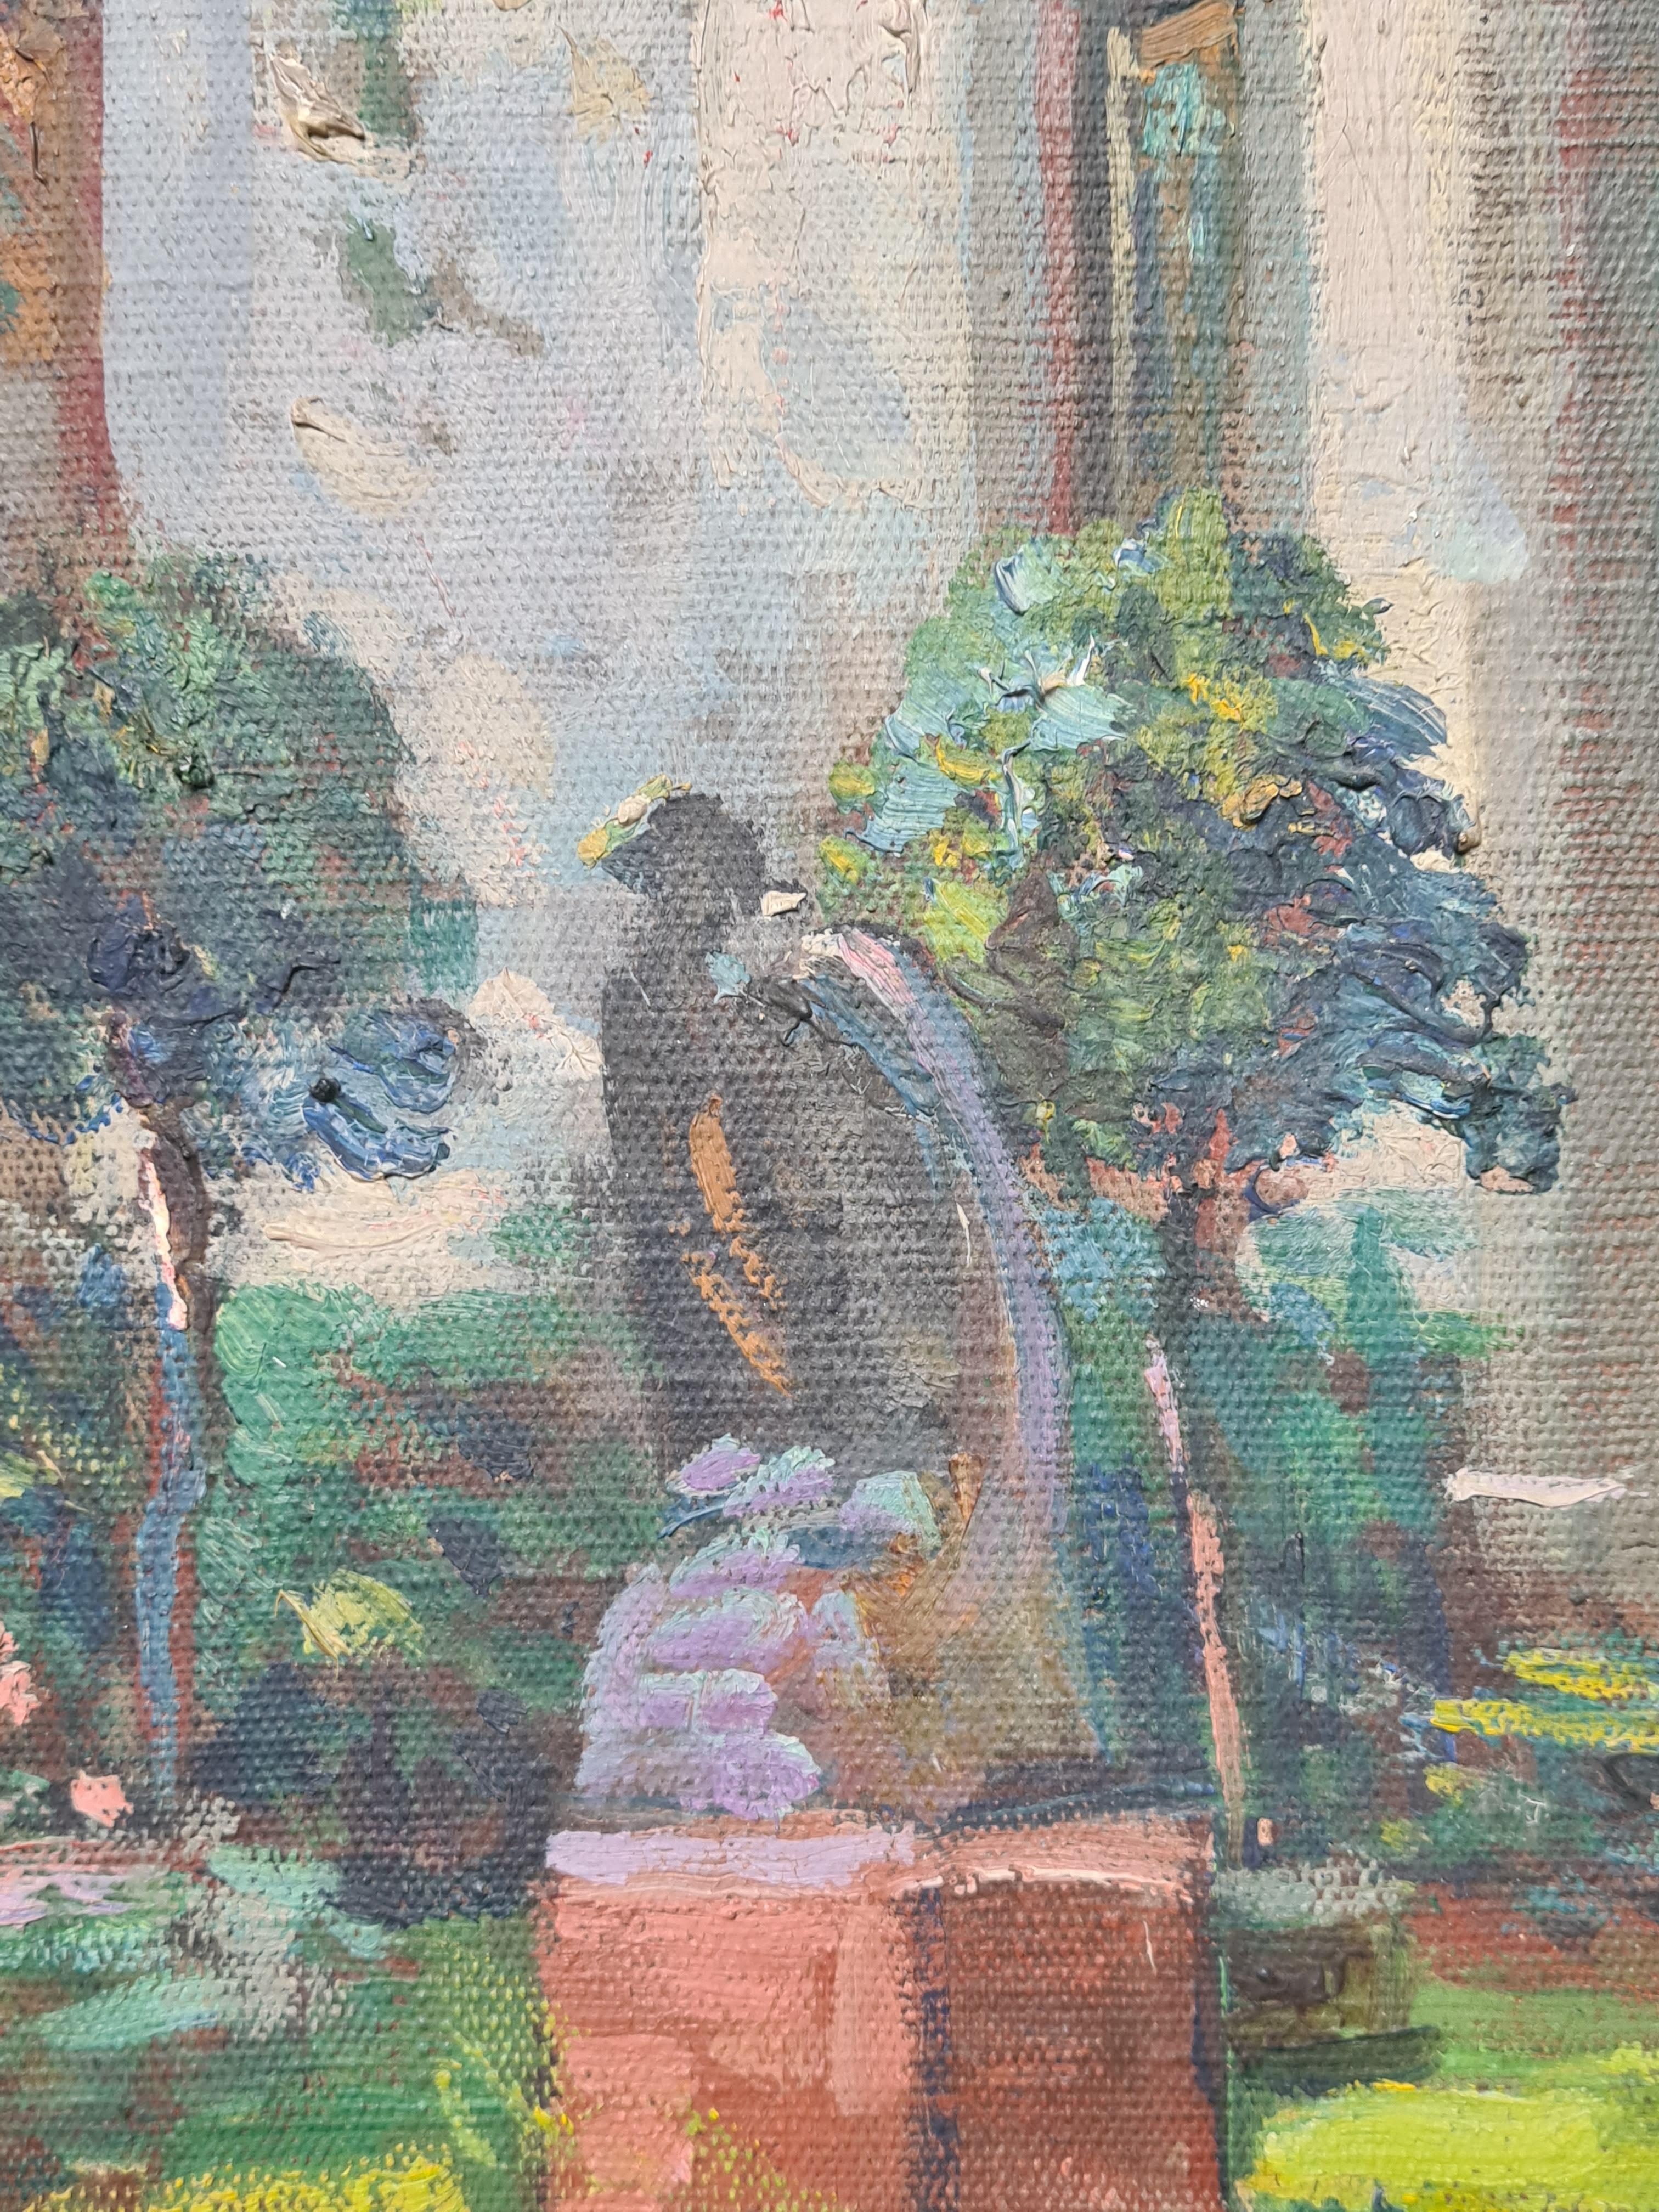 Moorish, Belle Epoque, Villa and Garden at St Tropez - Post-Impressionist Painting by Suzanne Minier